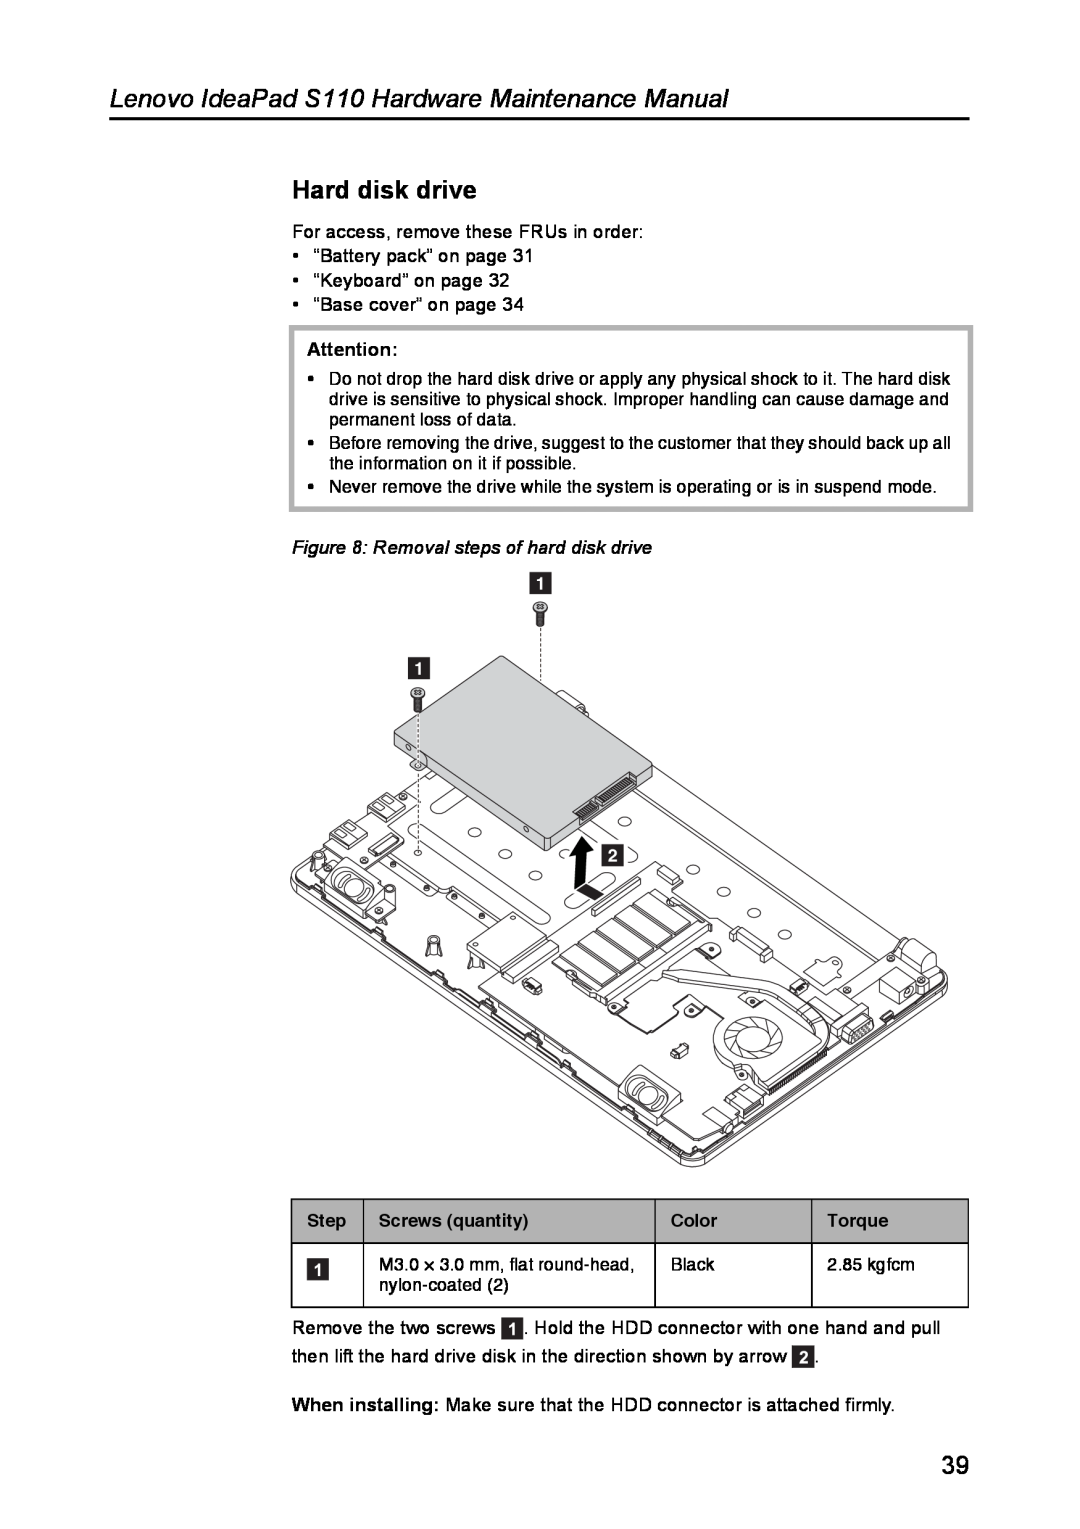 Lenovo manual Hard disk drive, Removal steps of hard disk drive, Lenovo IdeaPad S110 Hardware Maintenance Manual 